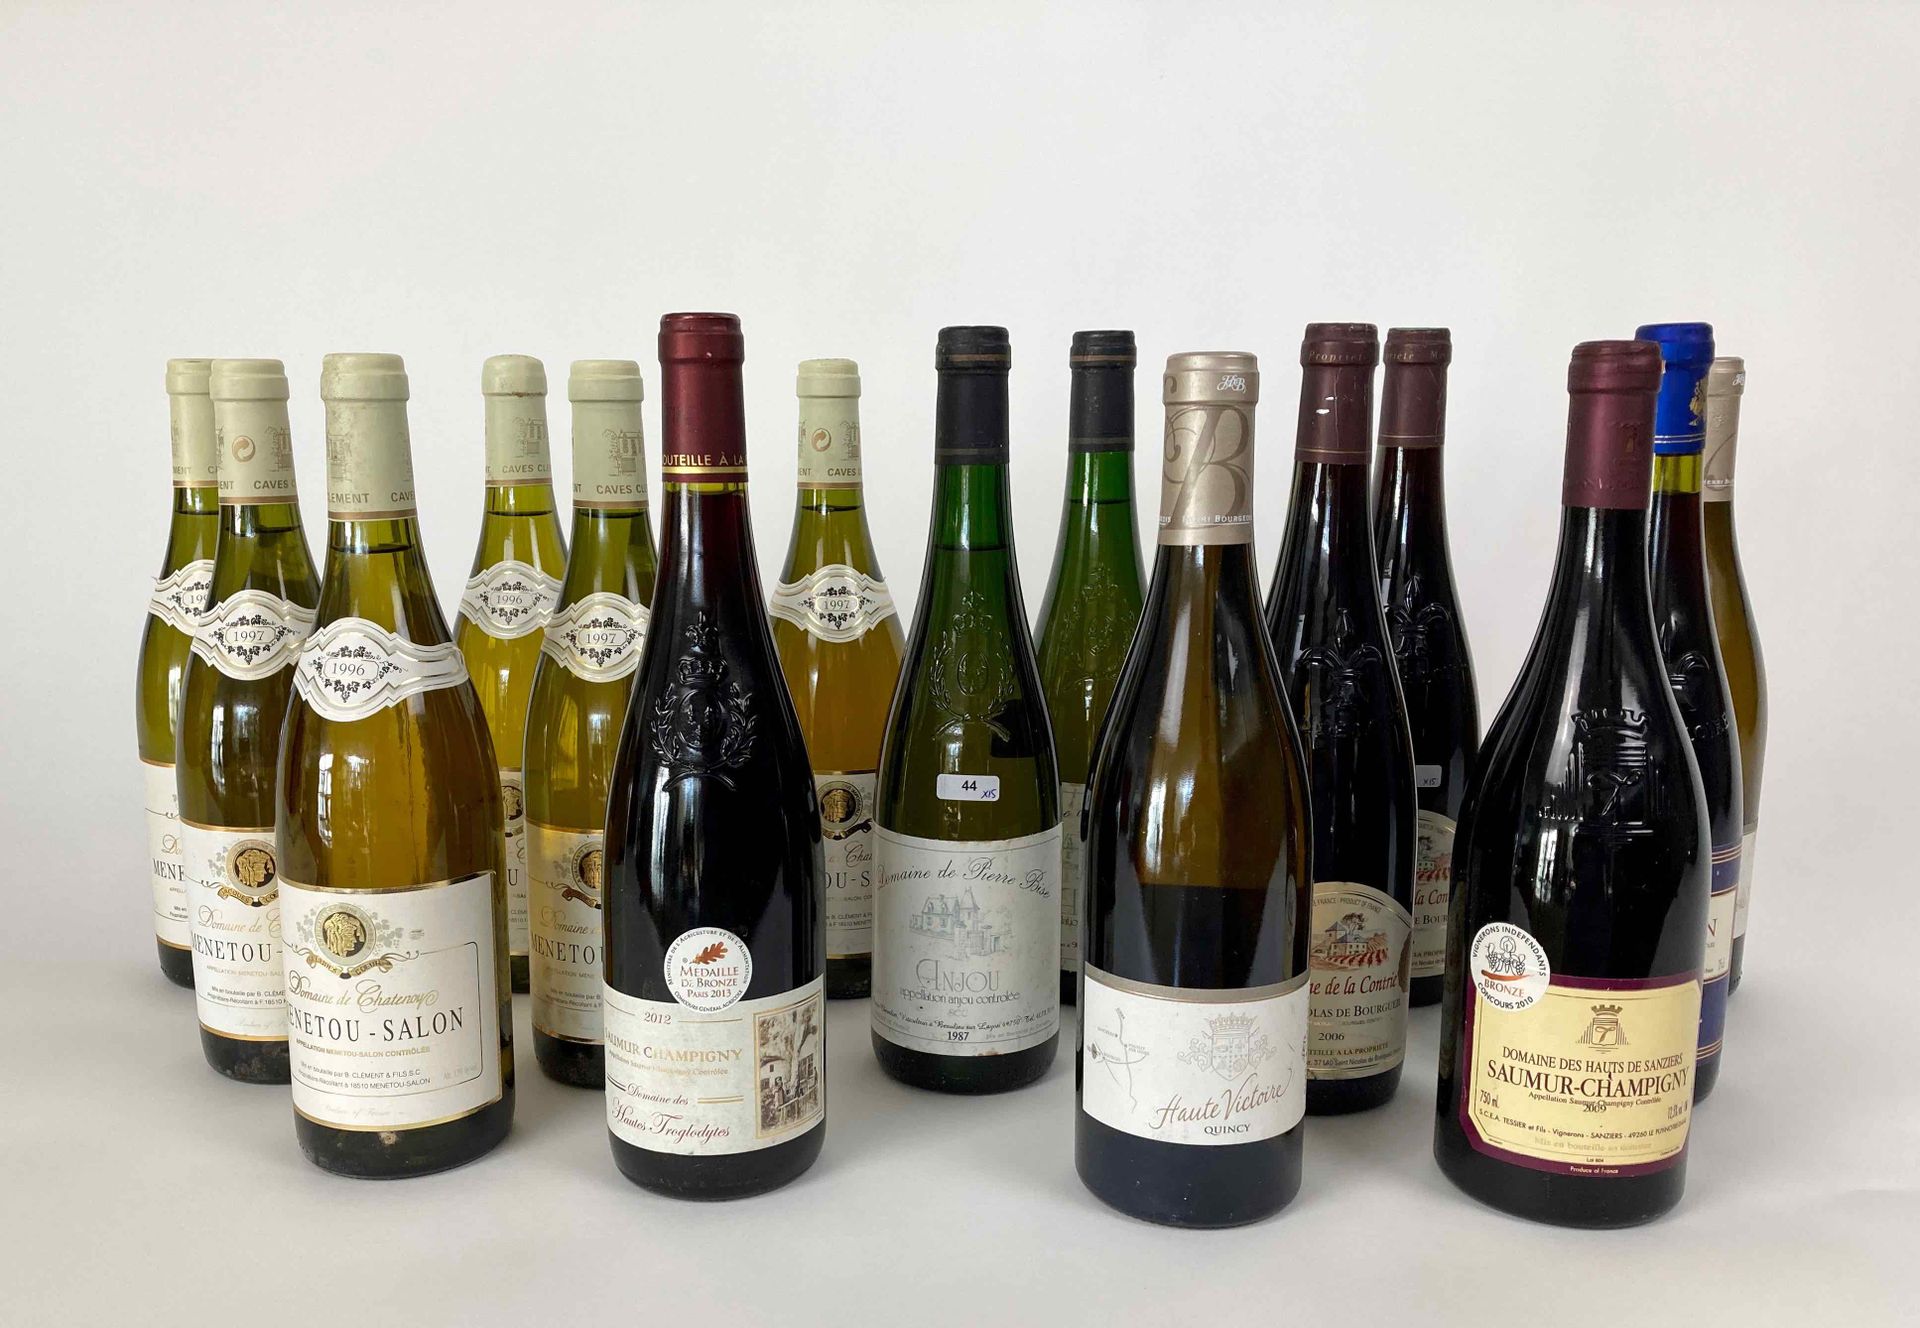 LOIRE Lote de quince botellas:

- (ANJOU), Domaine de Pierre Bise 1987 (blanco),&hellip;